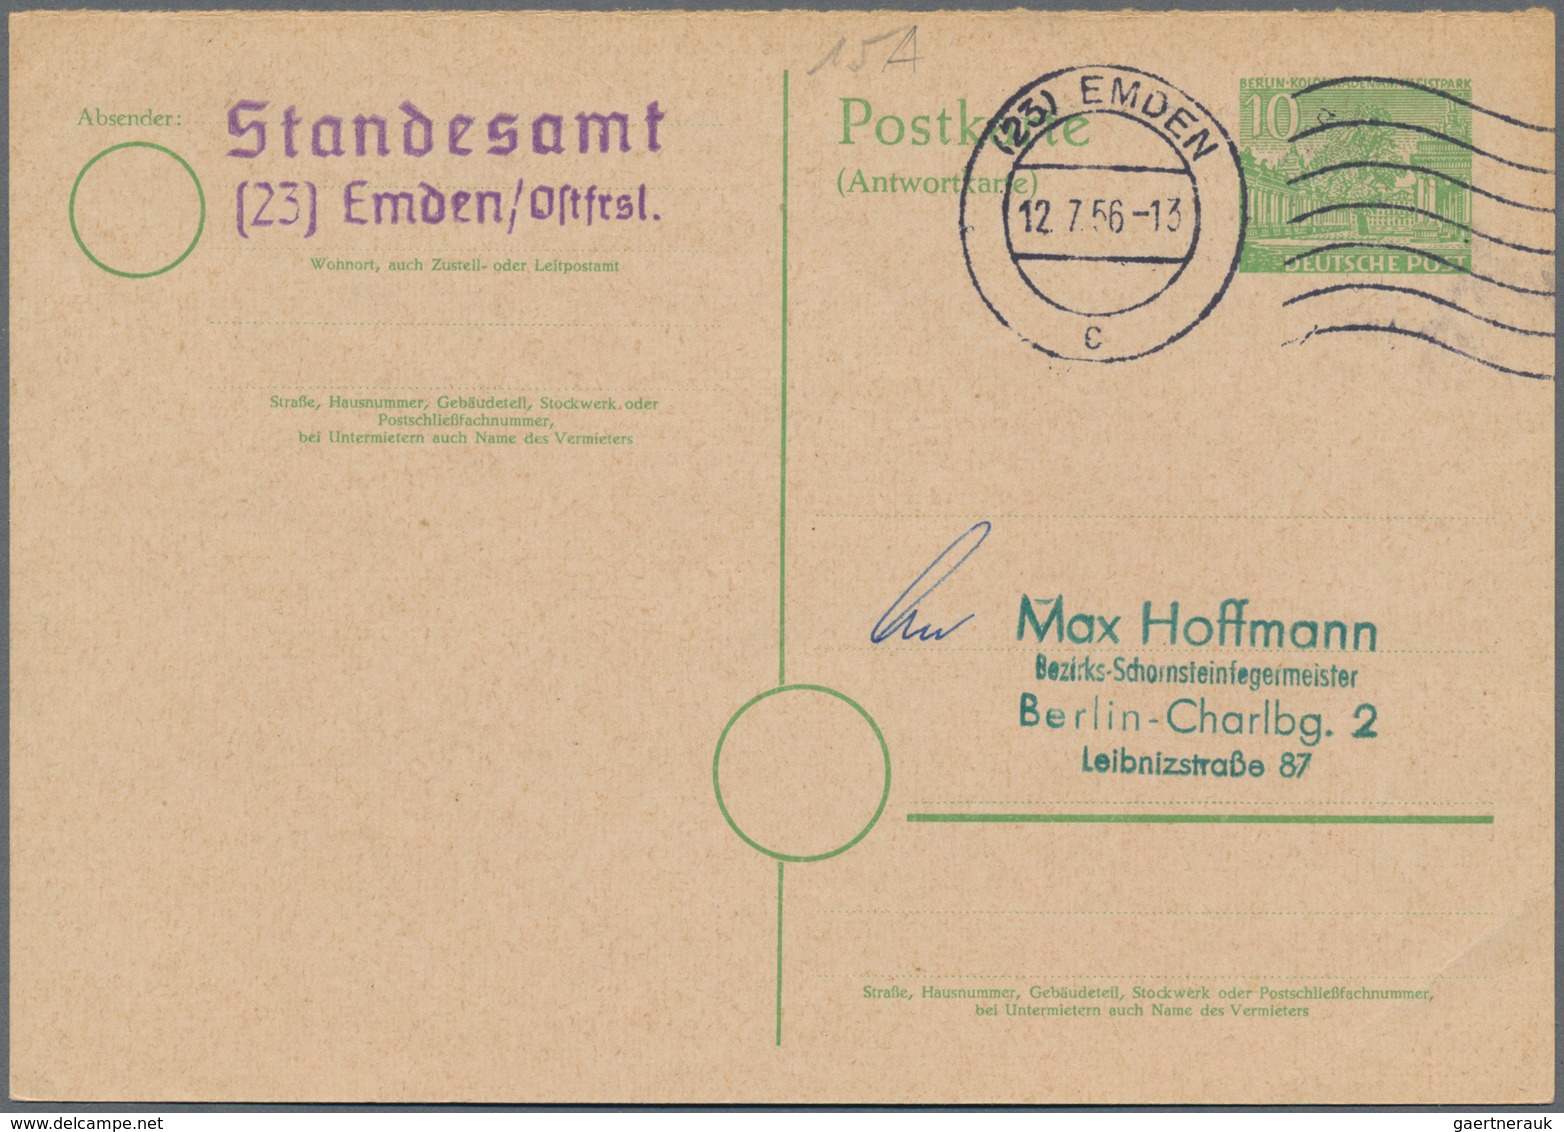 Deutschland - Ganzsachen: 1945 ab, gehaltvolle Sammlung mit ca.260 gebrauchten Ganzsachen im Ringbin